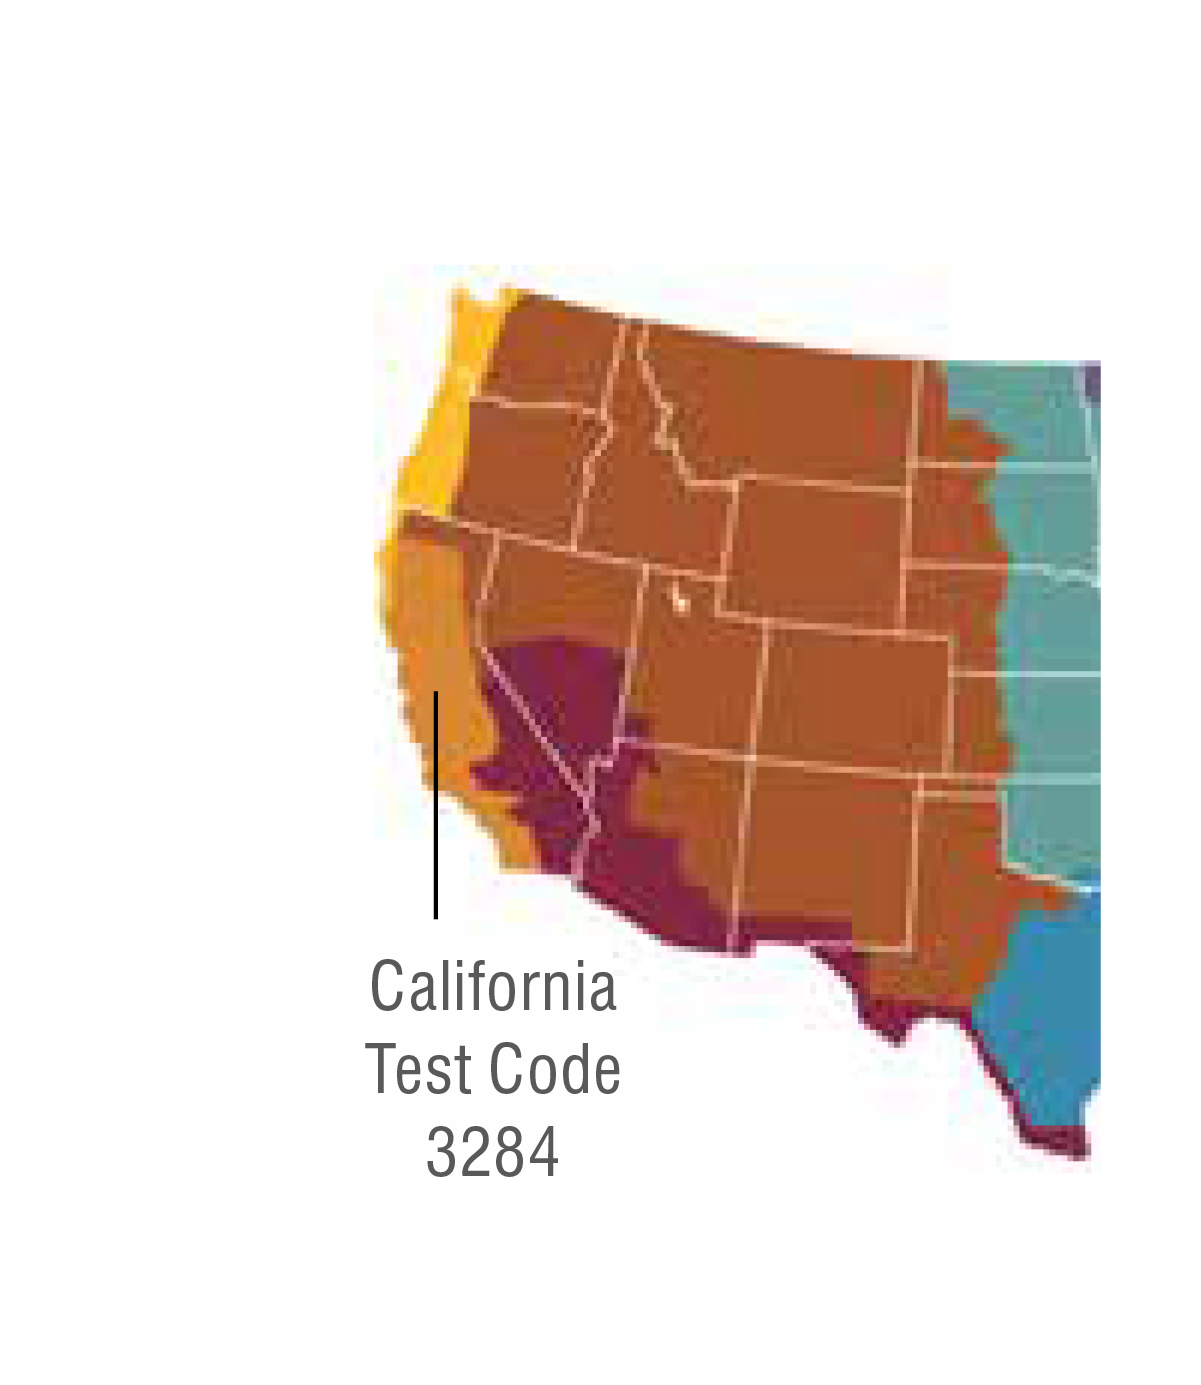 Map highlighting IDEXX's California regional allergen zone